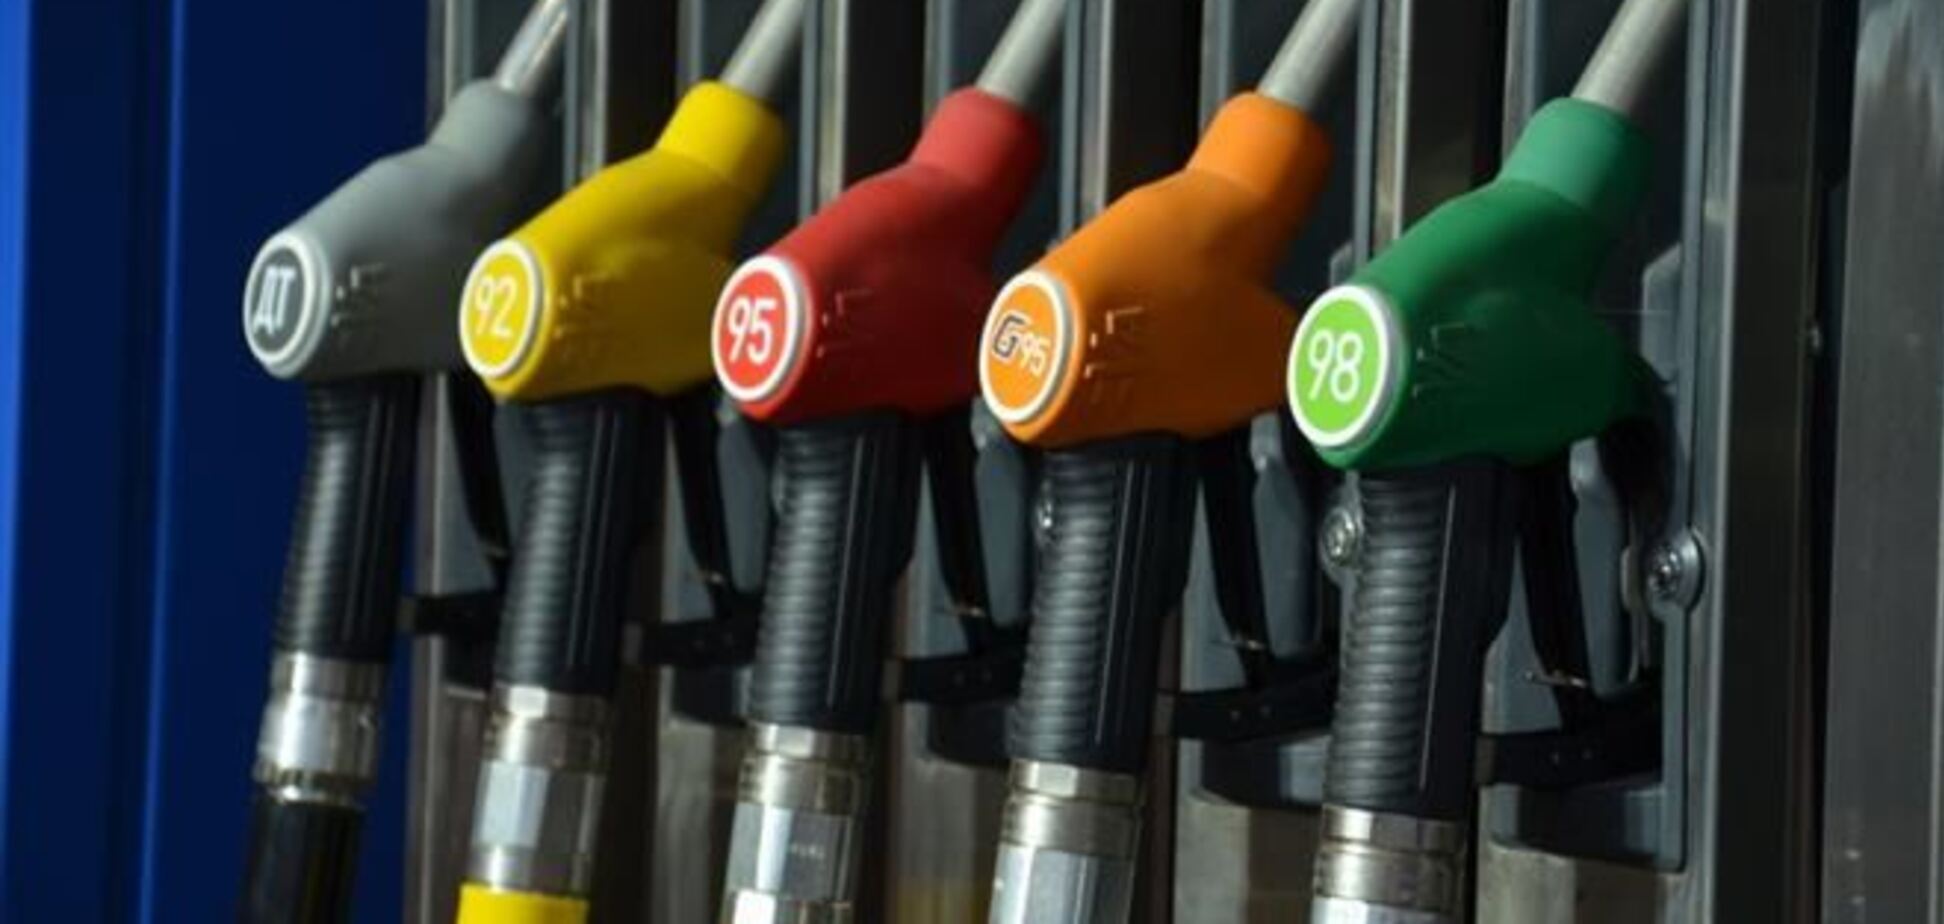 Кабмин намерен проверить обоснованность цен на бензин и дизтопливо